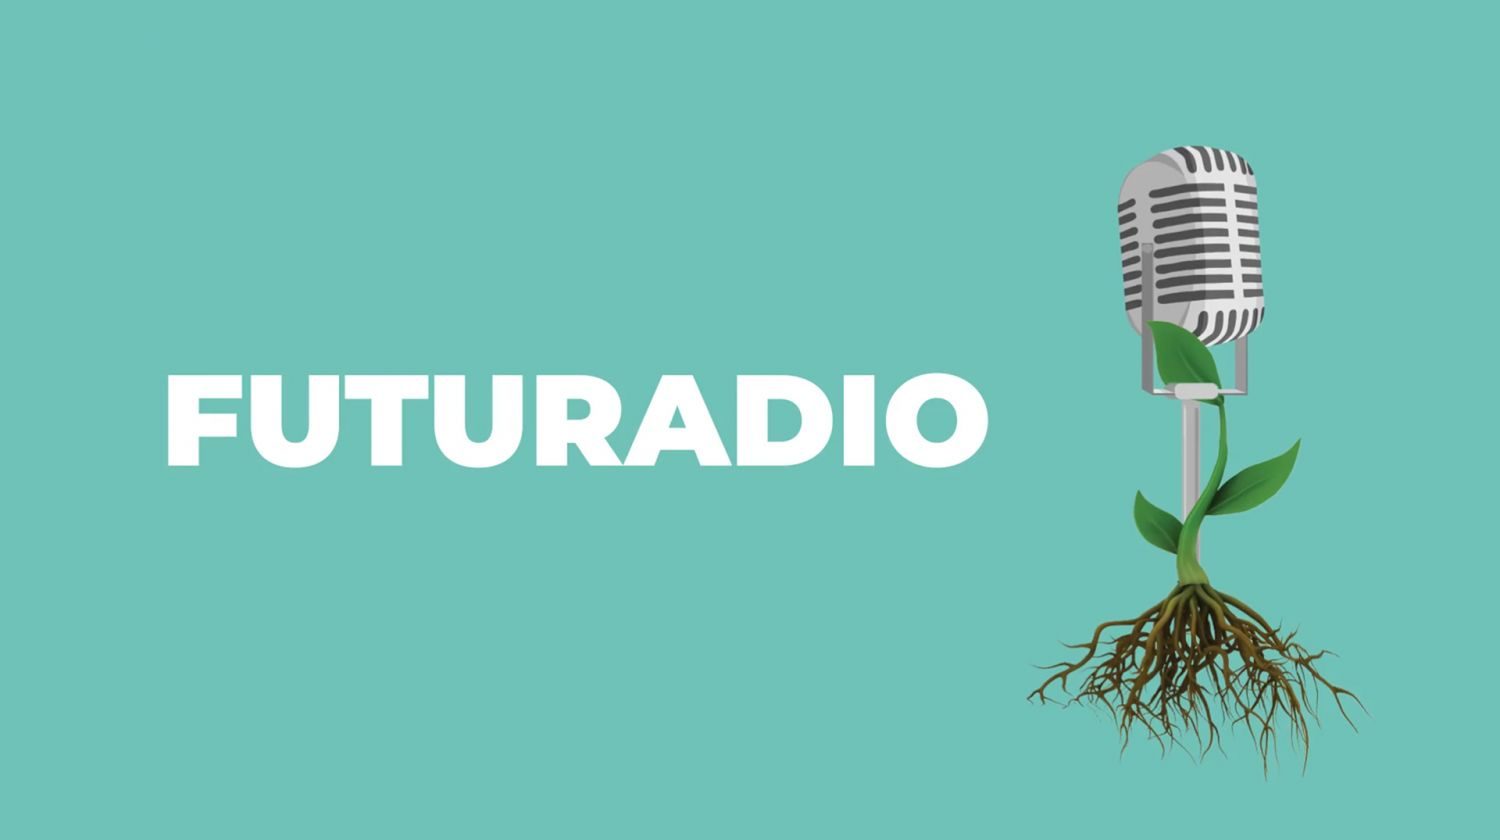 Nalaďte se na aquaponii, pusťte si naše podcasty